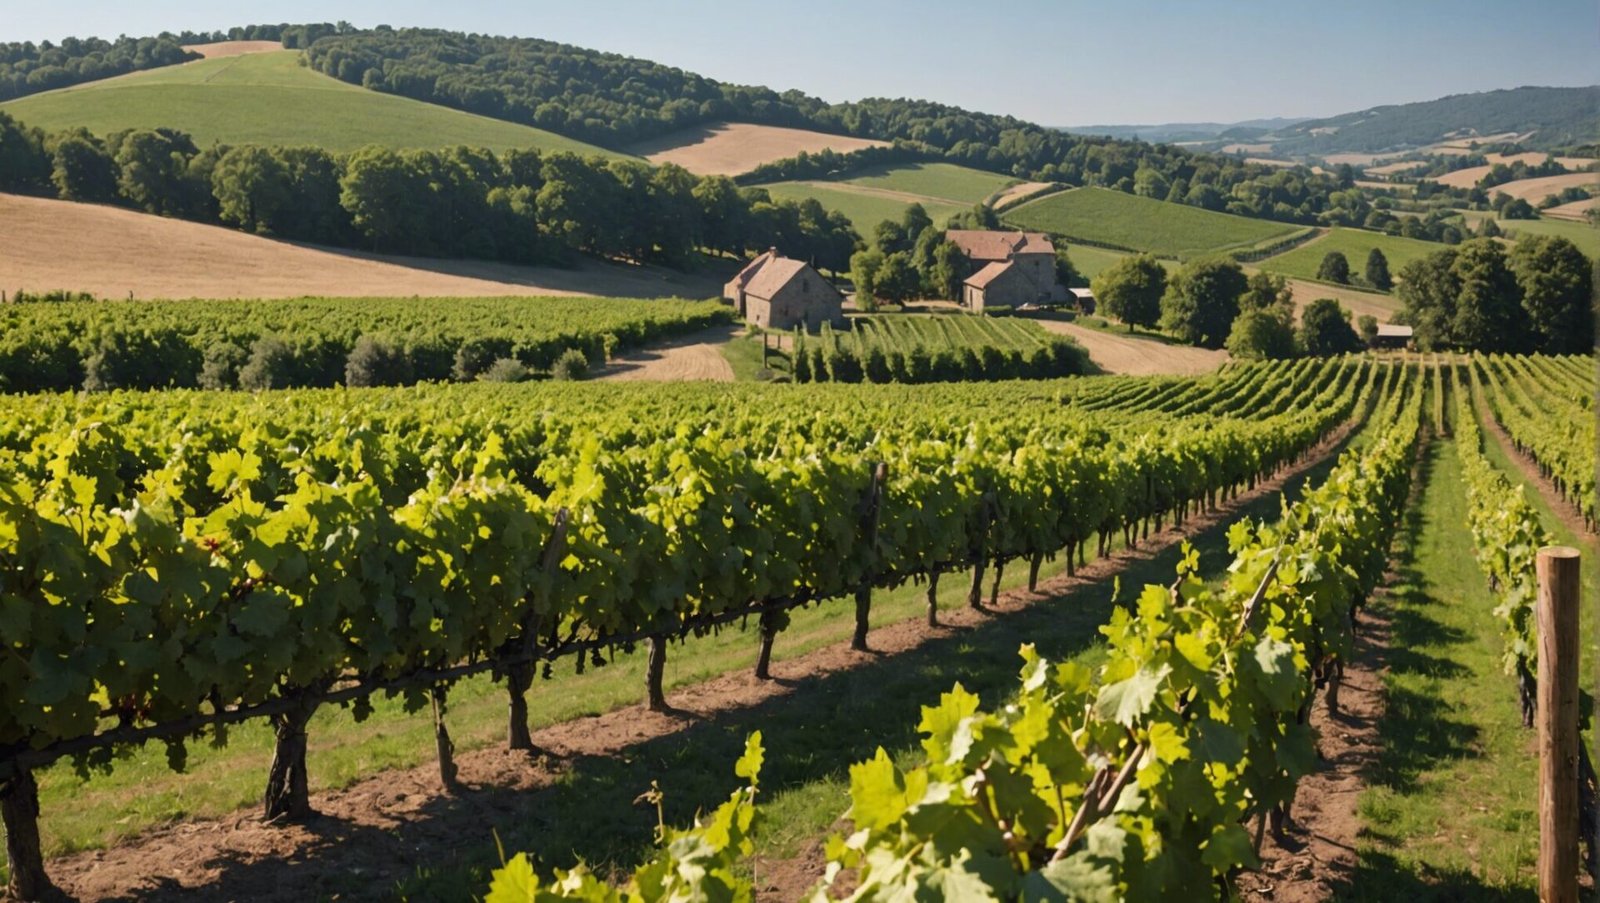 découvrez pourquoi les propriétaires de vignobles refusent de vendre malgré le ralentissement du marché viticole.